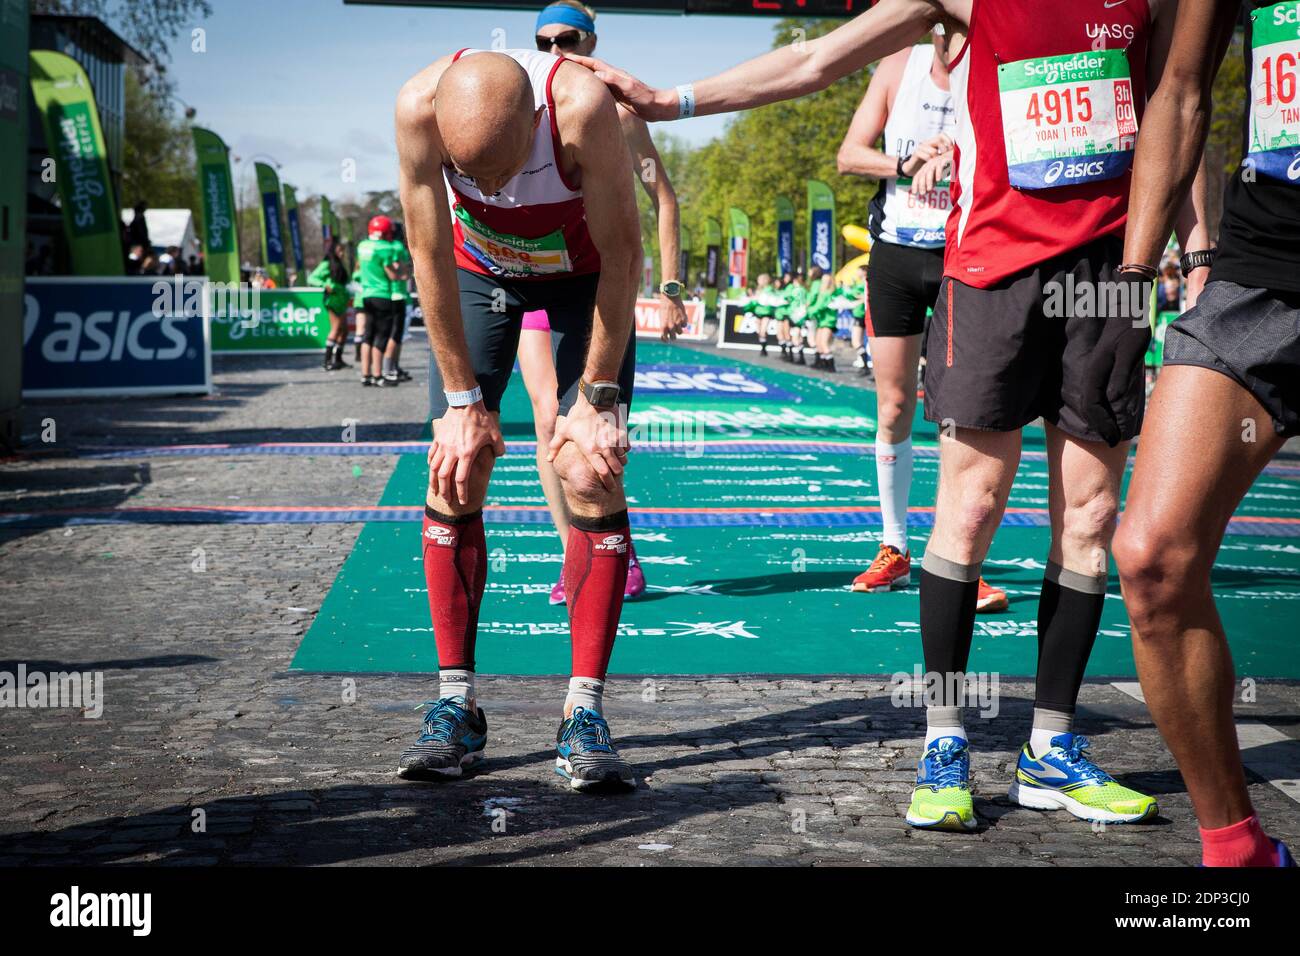 Marathon de paris hi-res stock photography and images - Alamy